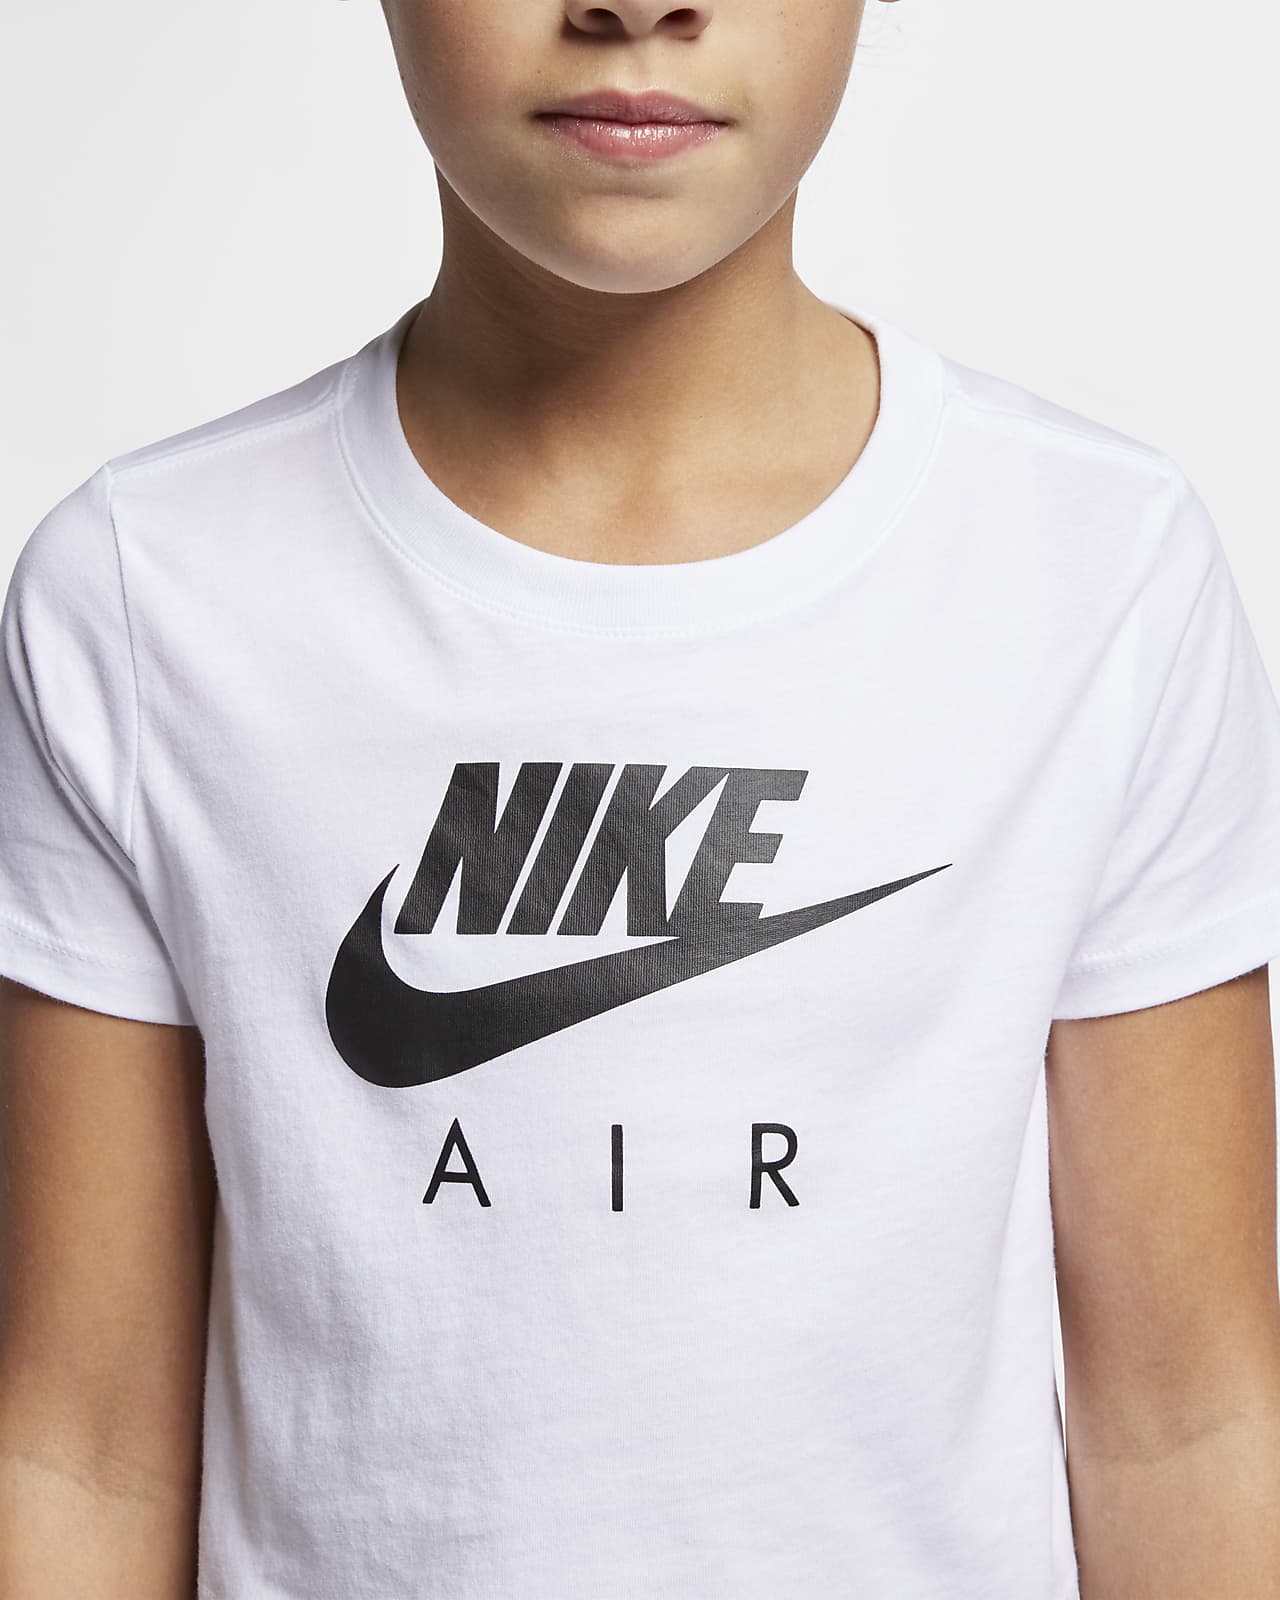 Nike Air Older Kids' (Girls') Crop Top 